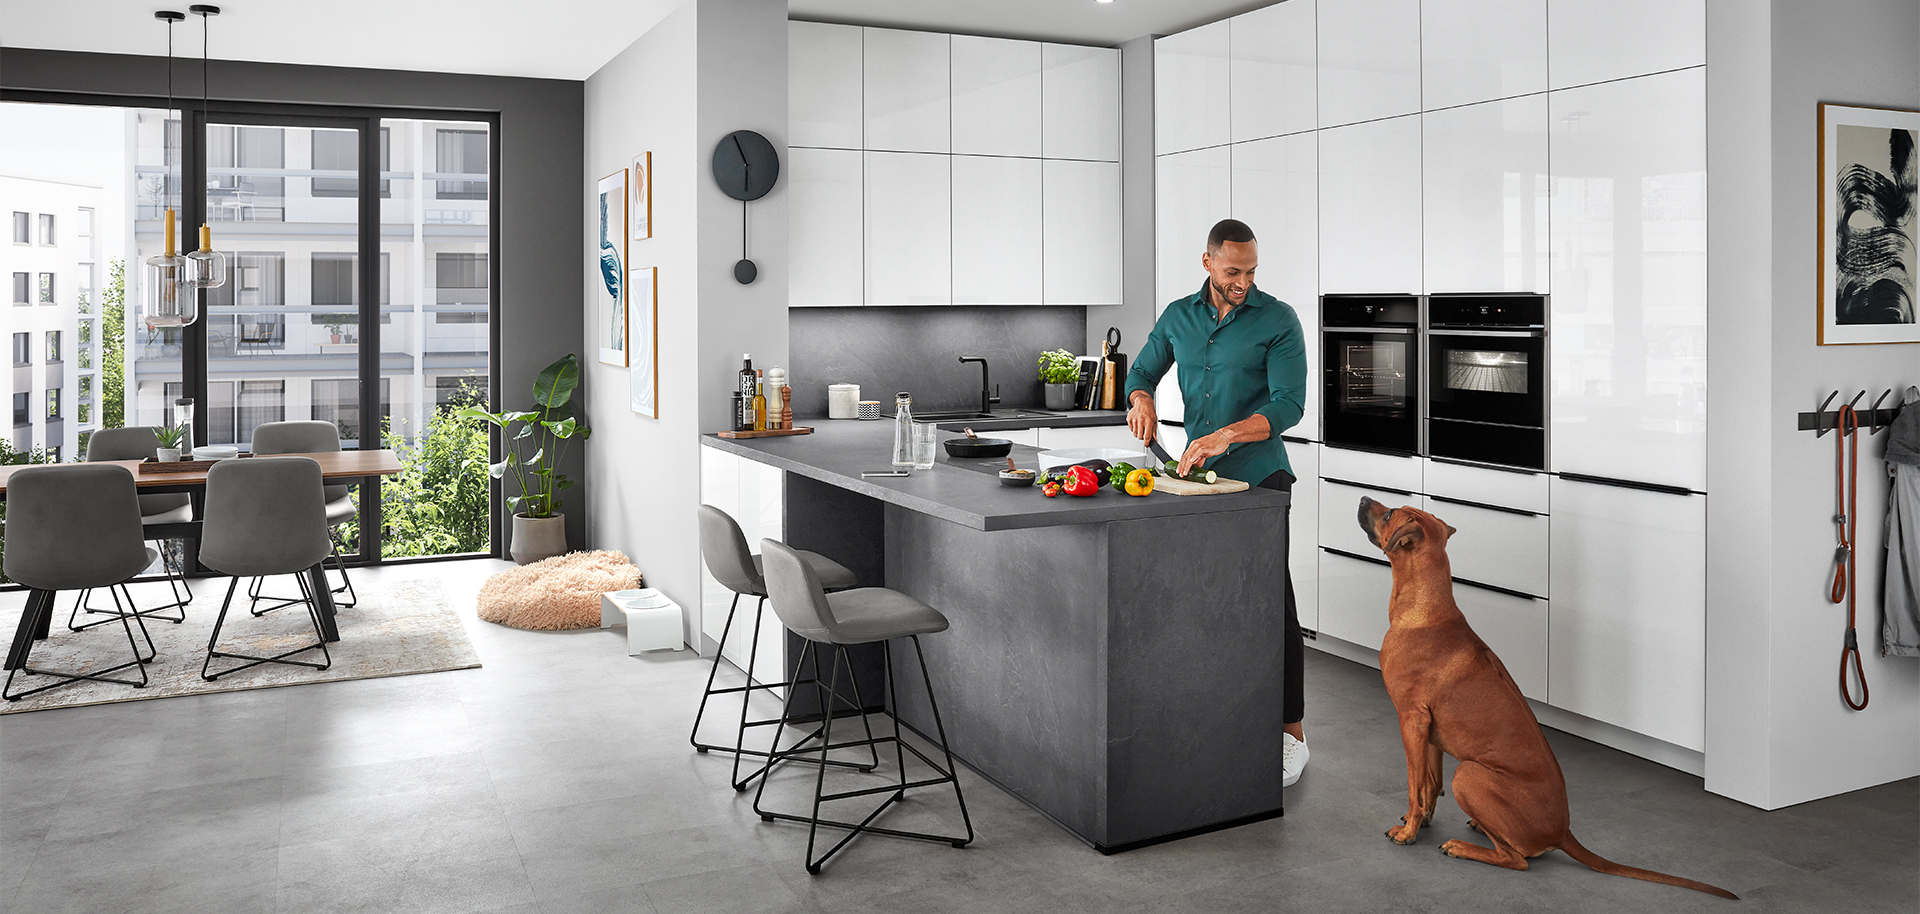 Een stijlvolle moderne keukenscène met een man die eten bereidt op een kookeiland terwijl een hond toekijkt, wat een comfortabele, eigentijdse huiselijke levensstijl weerspiegelt.